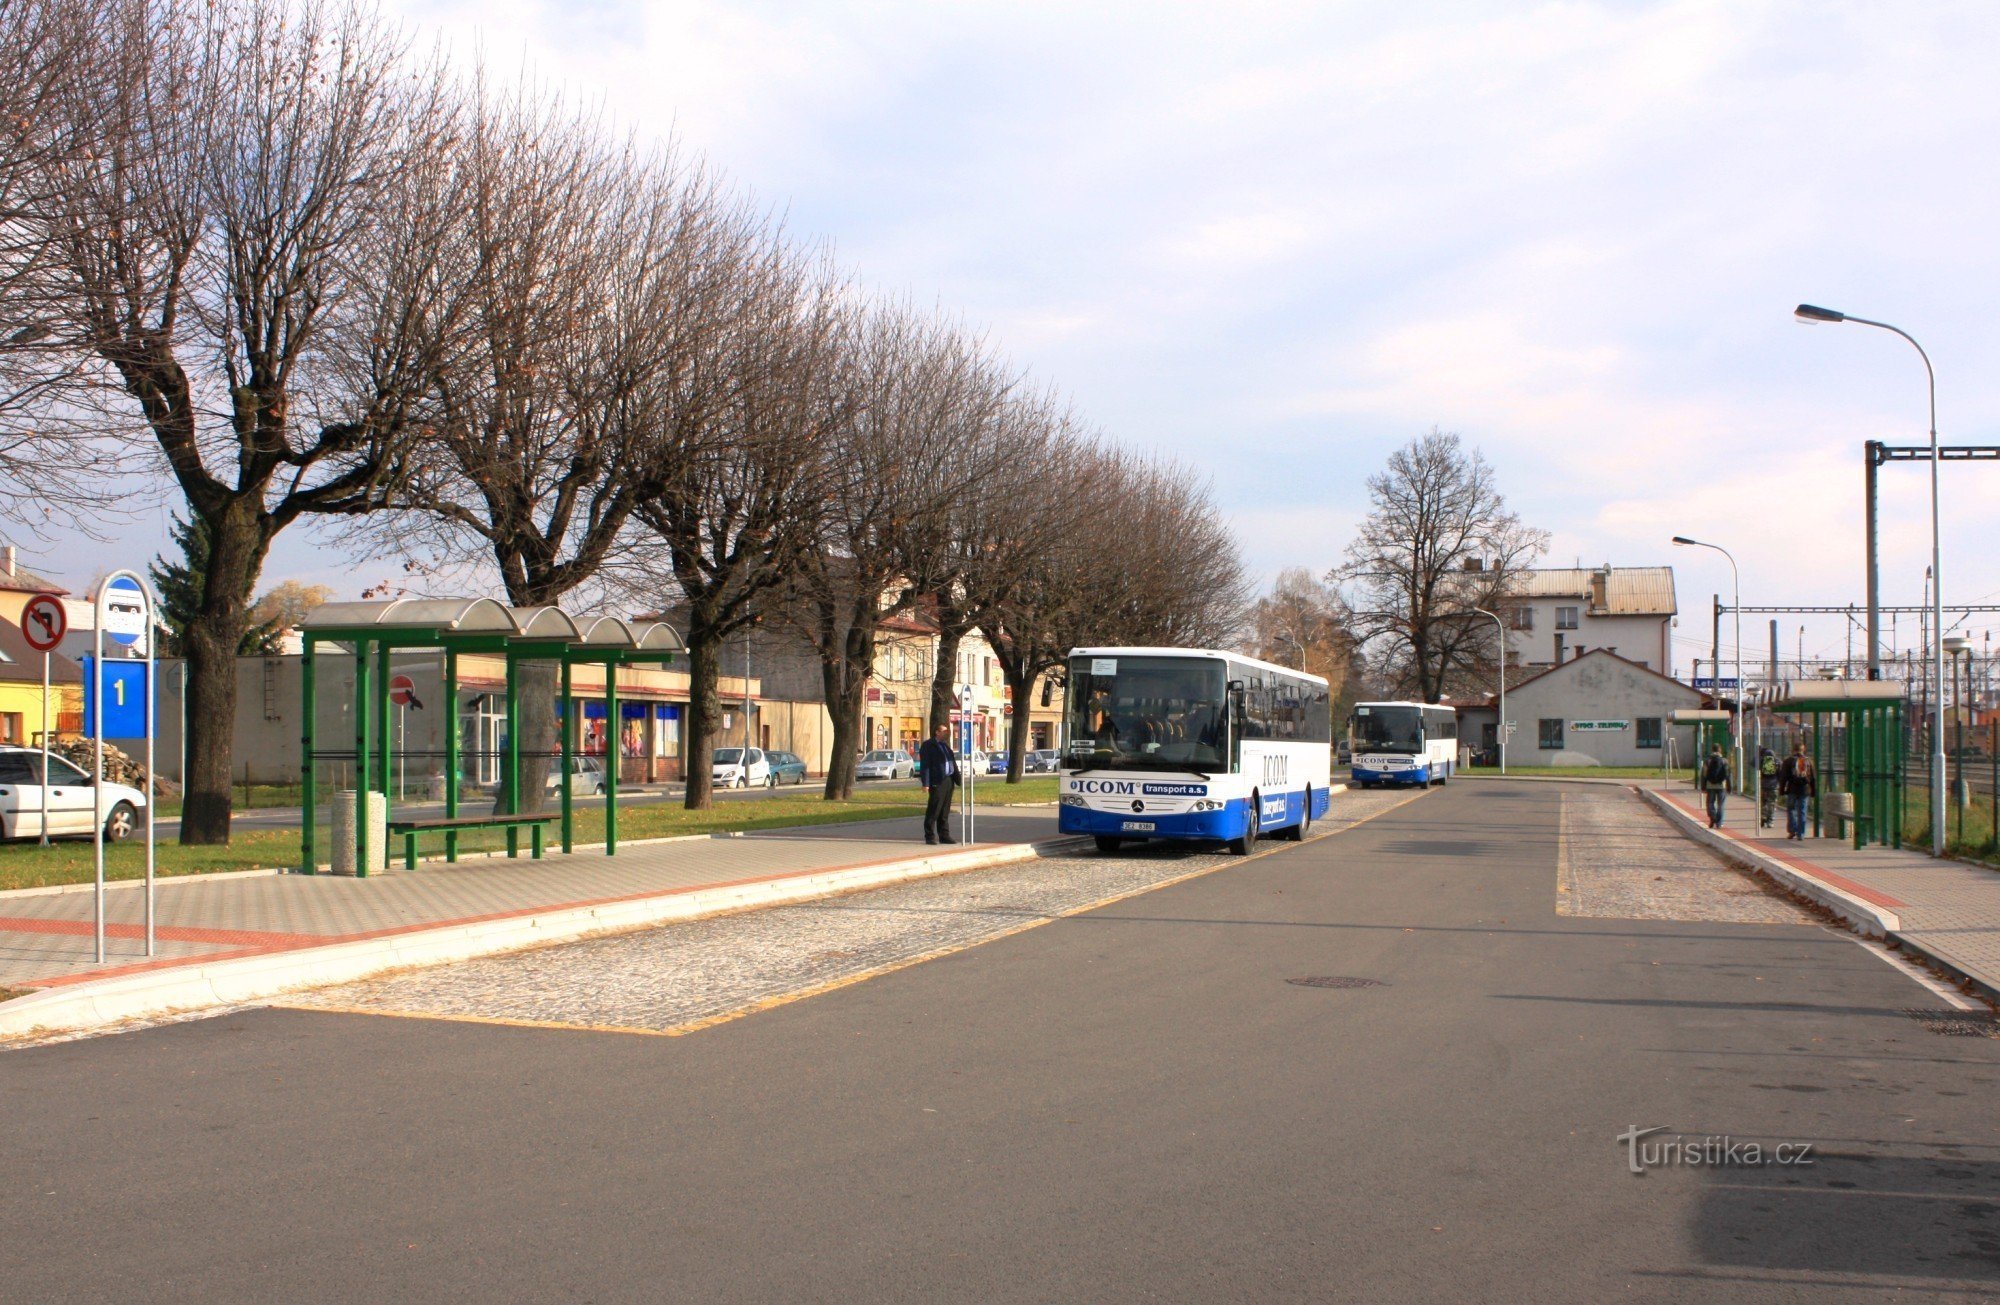 Letohrad - dworzec autobusowy